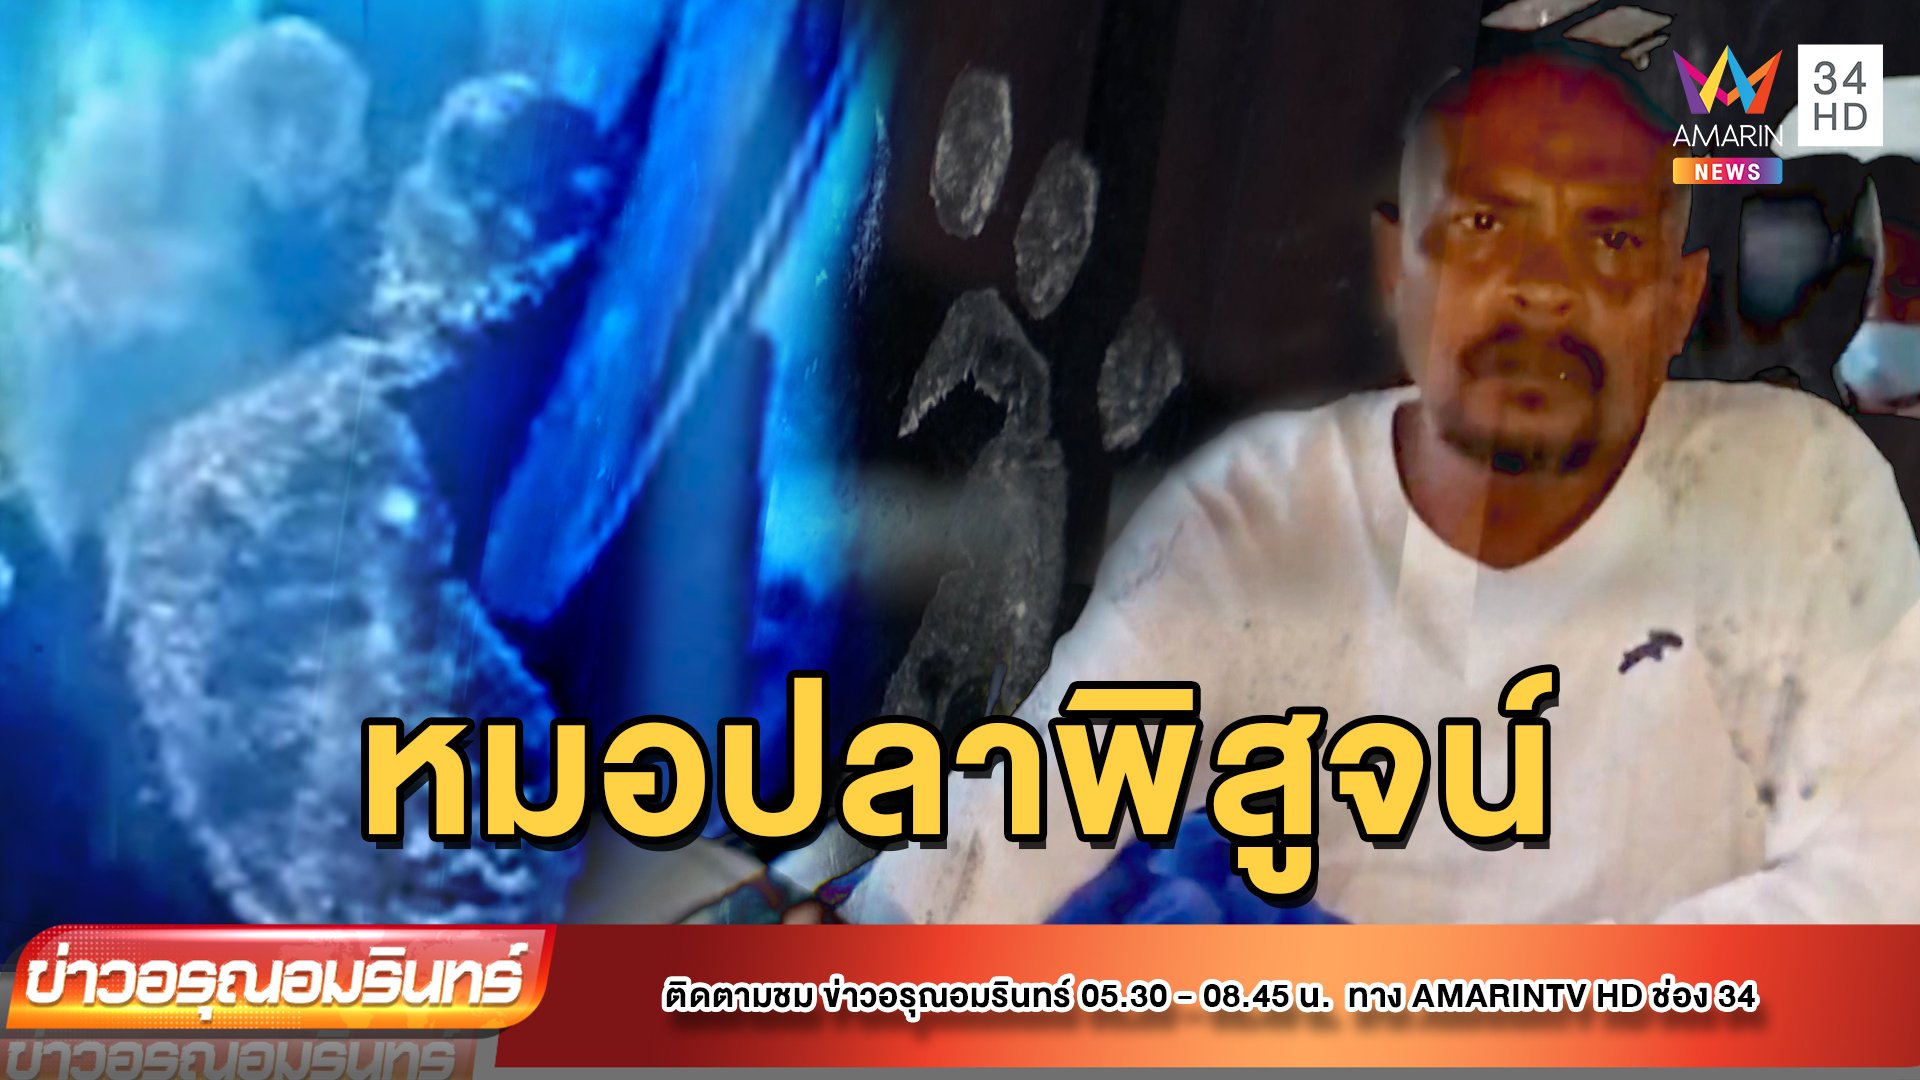 หมอปลาลุยพิสูจน์ รอยเท้ากุมารทองโผล่ในบ้าน | ข่าวอรุณอมรินทร์ | 16 มิ.ย. 65 | AMARIN TVHD34